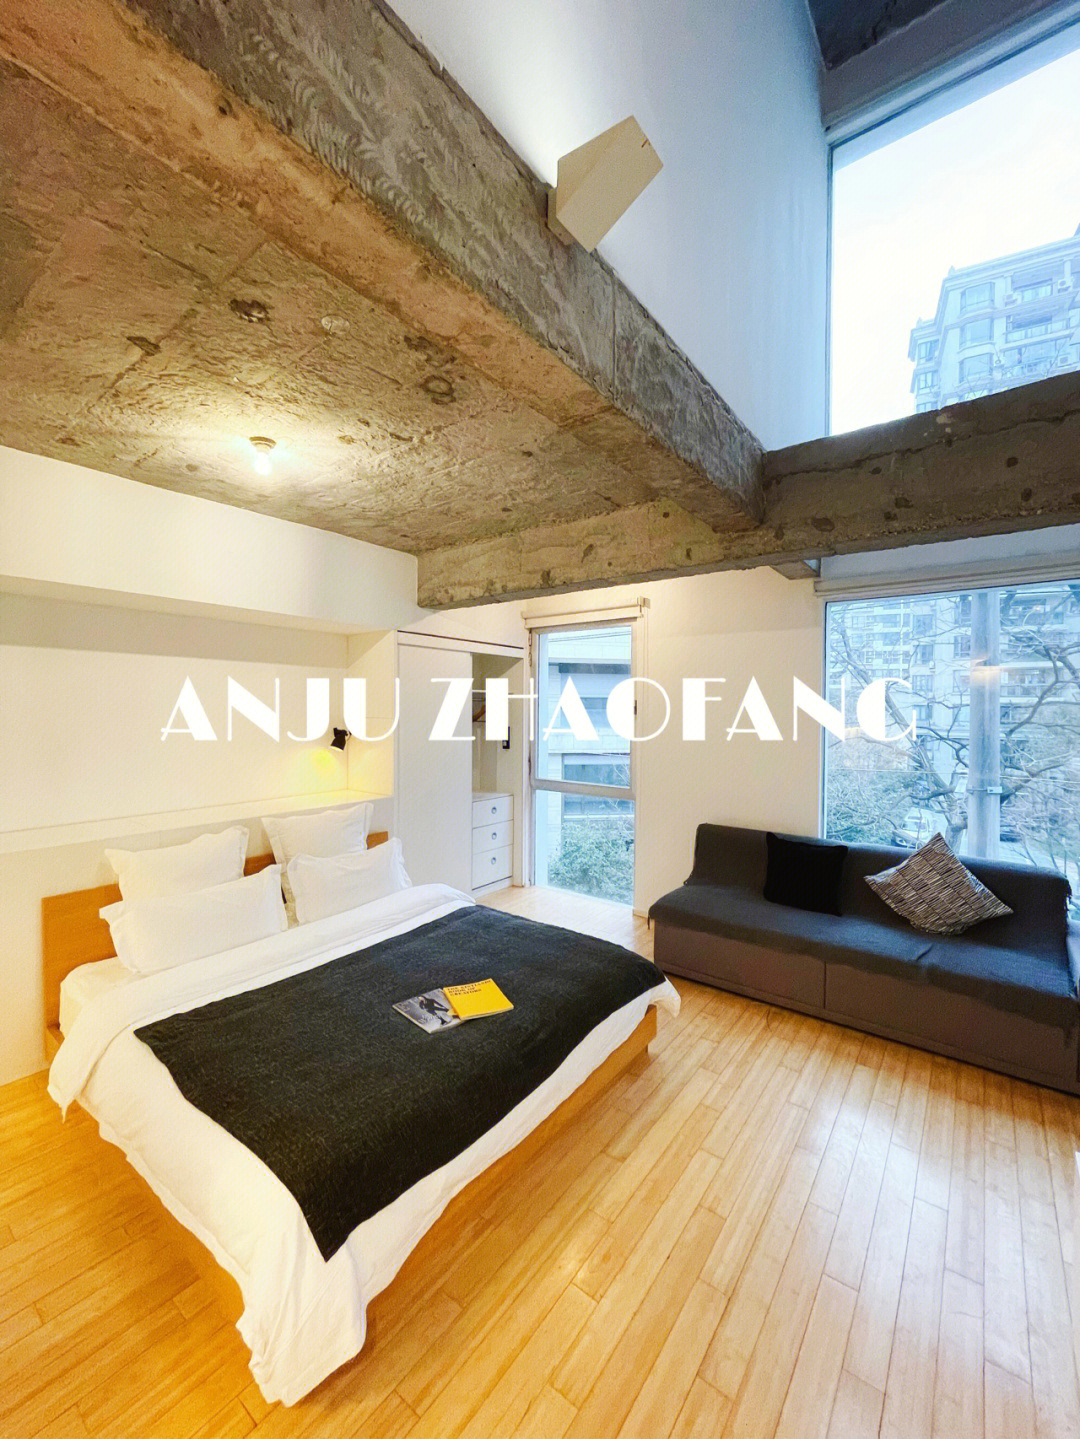 上海徐家汇loft公寓房图片